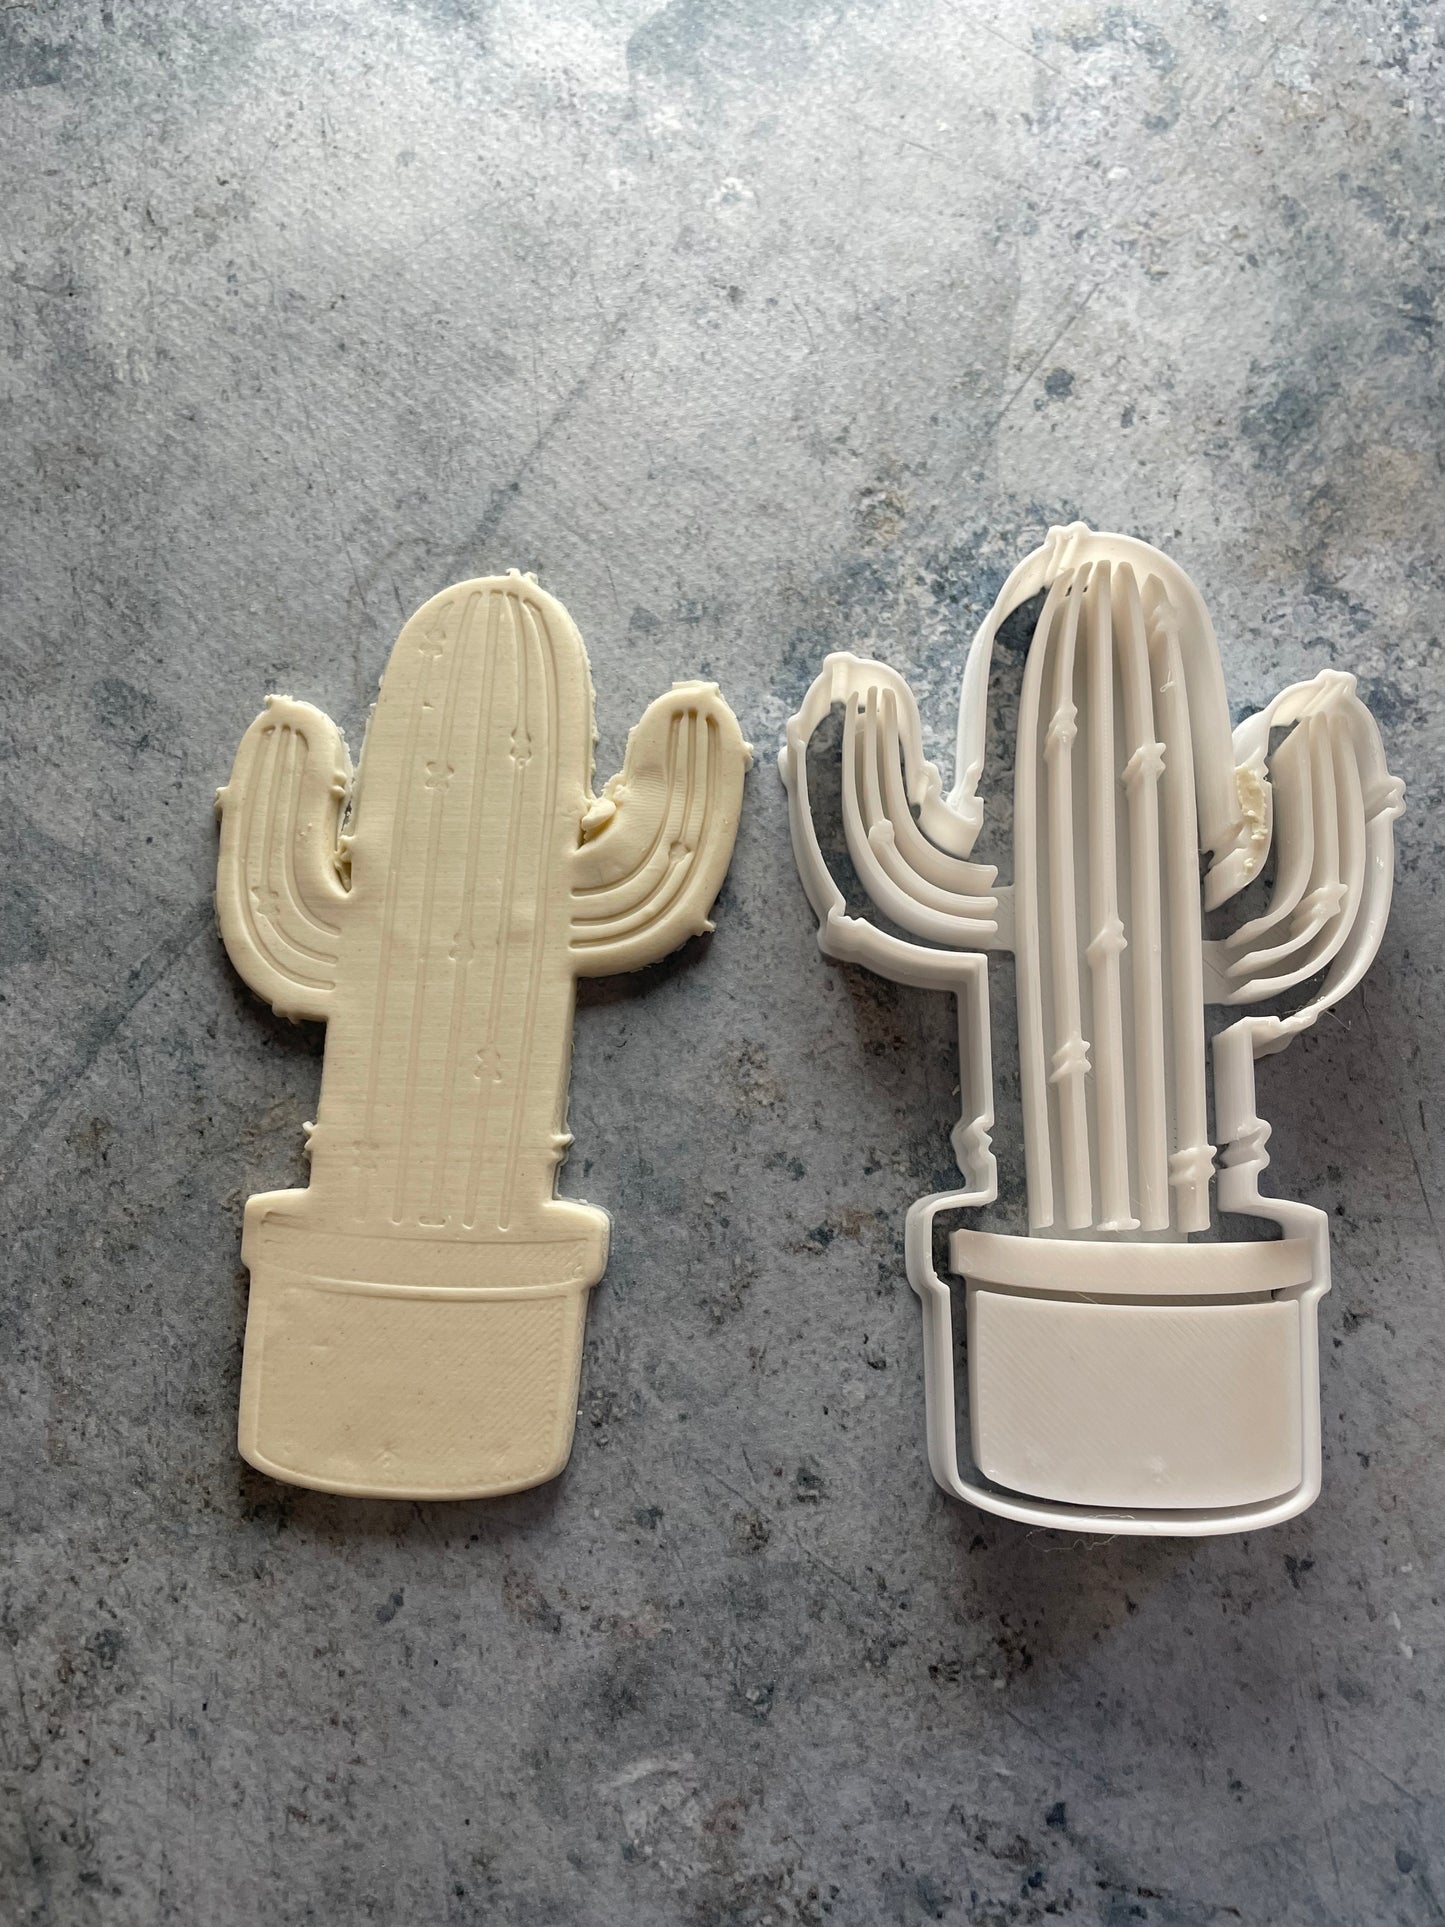 Emporte-pièce - Cactus -  pâte à sucre, pâte à modeler-Décoration gâteau-Fait maison-France 3D